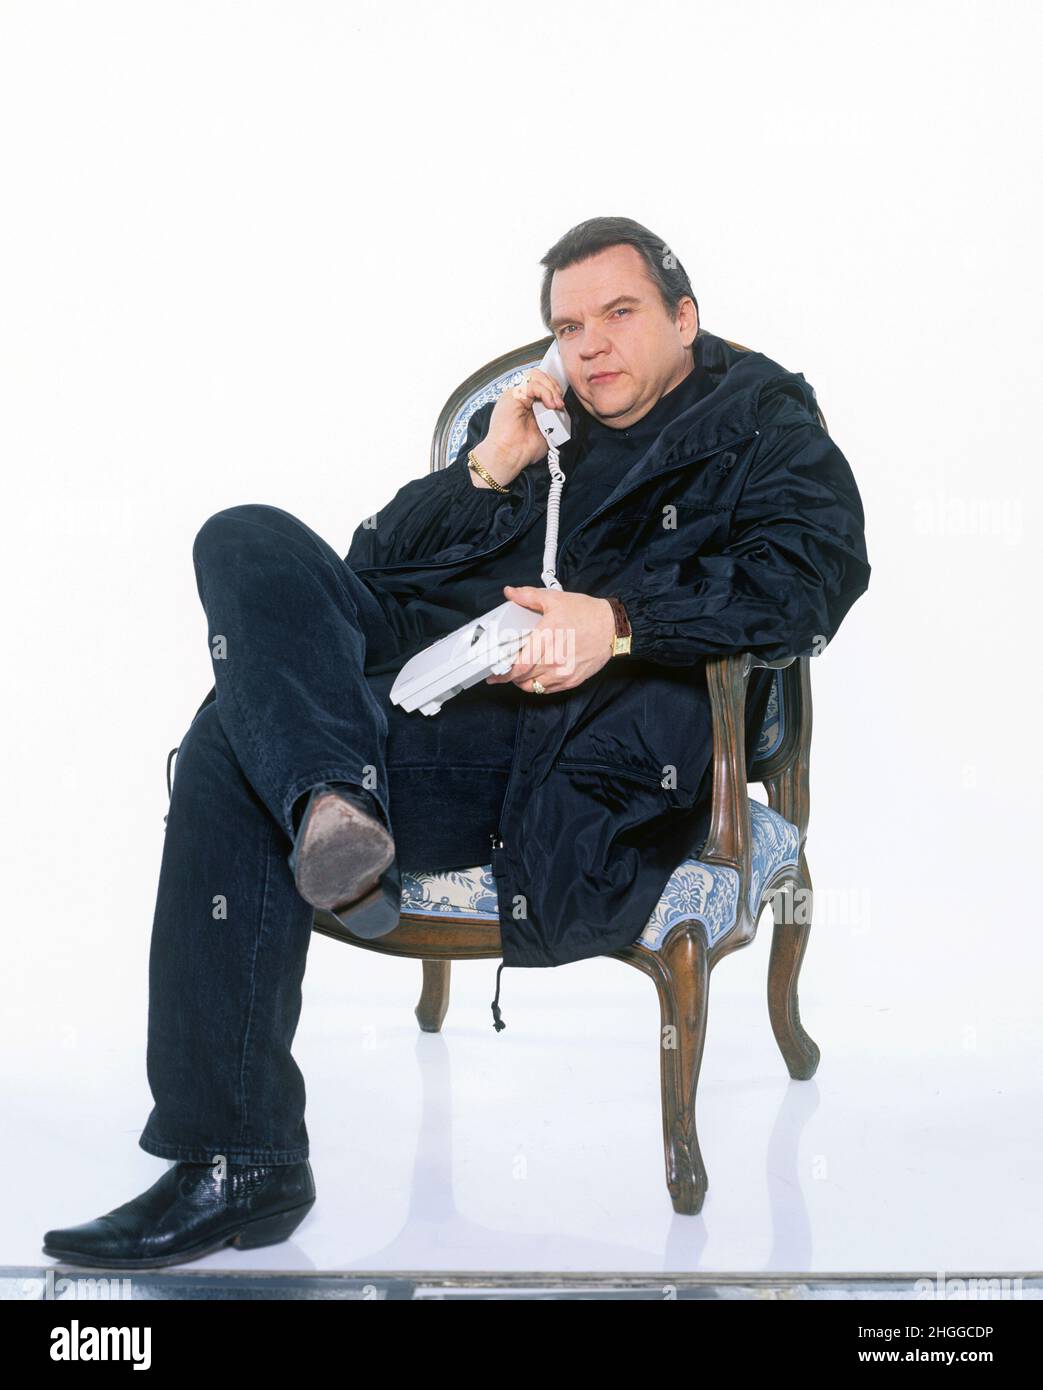 Meat Loaf aufgenommen am 18.01.1996 in München/München. Mindestpreis 20 Euro | Stockfoto